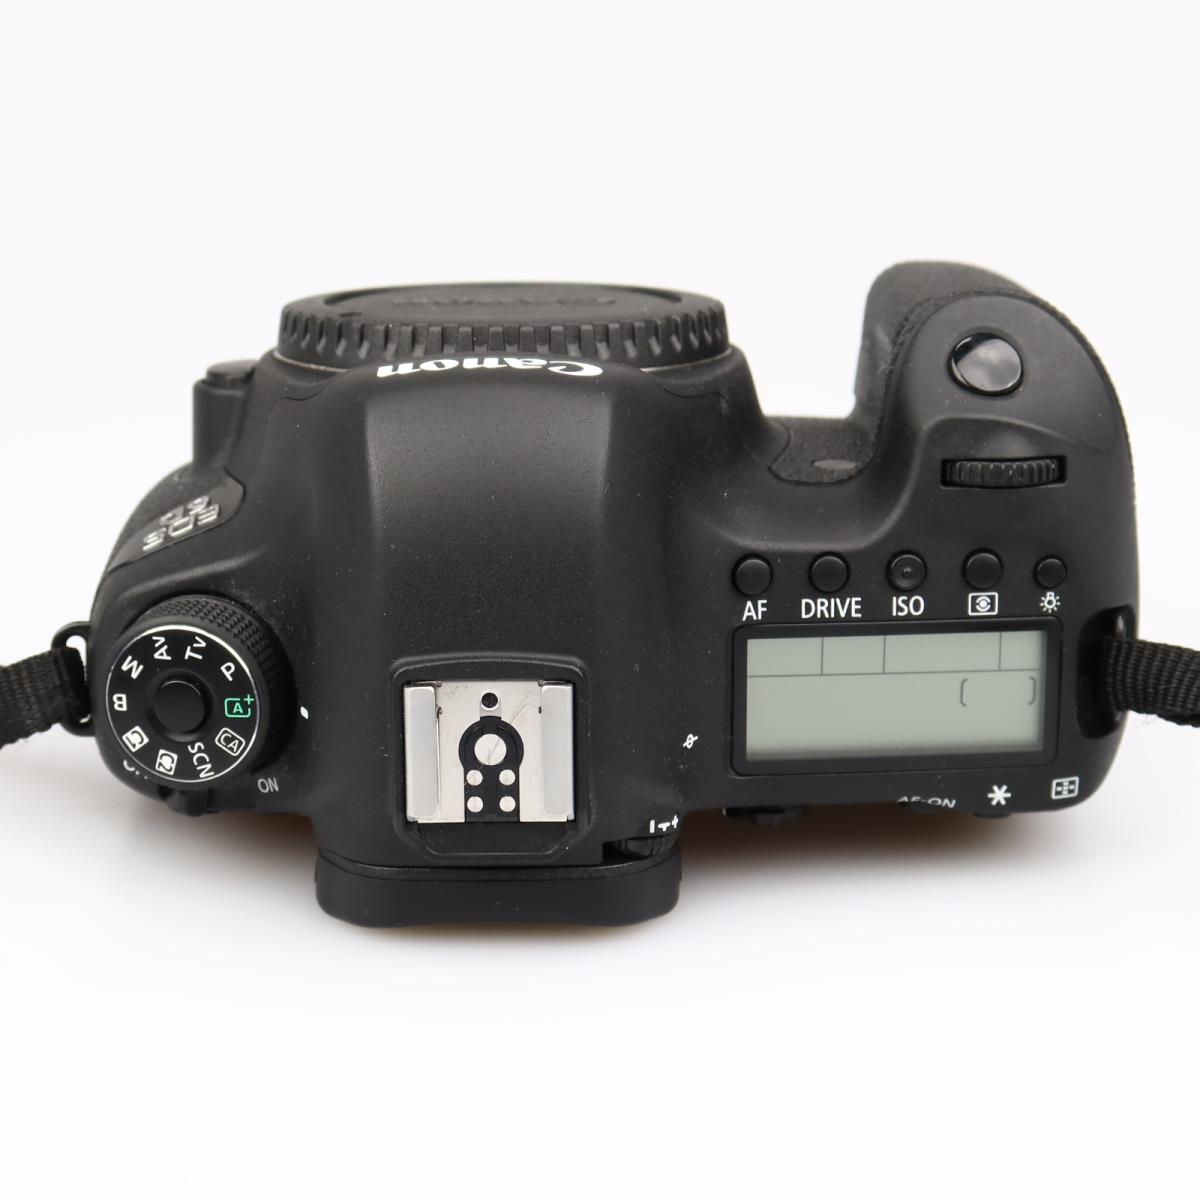 (Myyty) Canon EOS 6D runko (SC 7414) (käytetty)